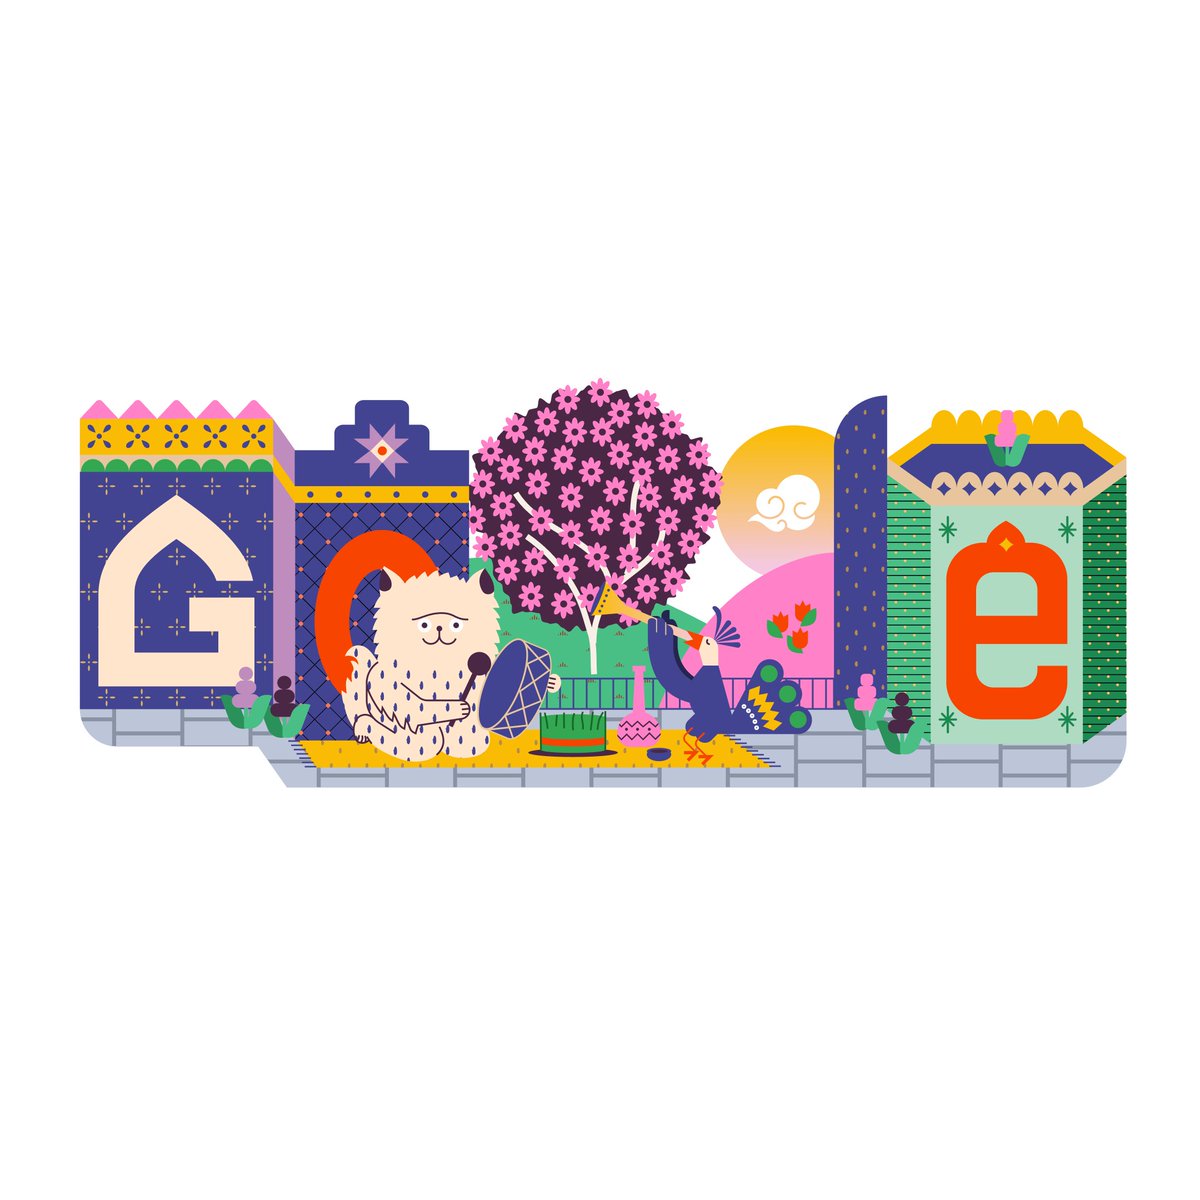 Google's logo ahead of #Nowruz